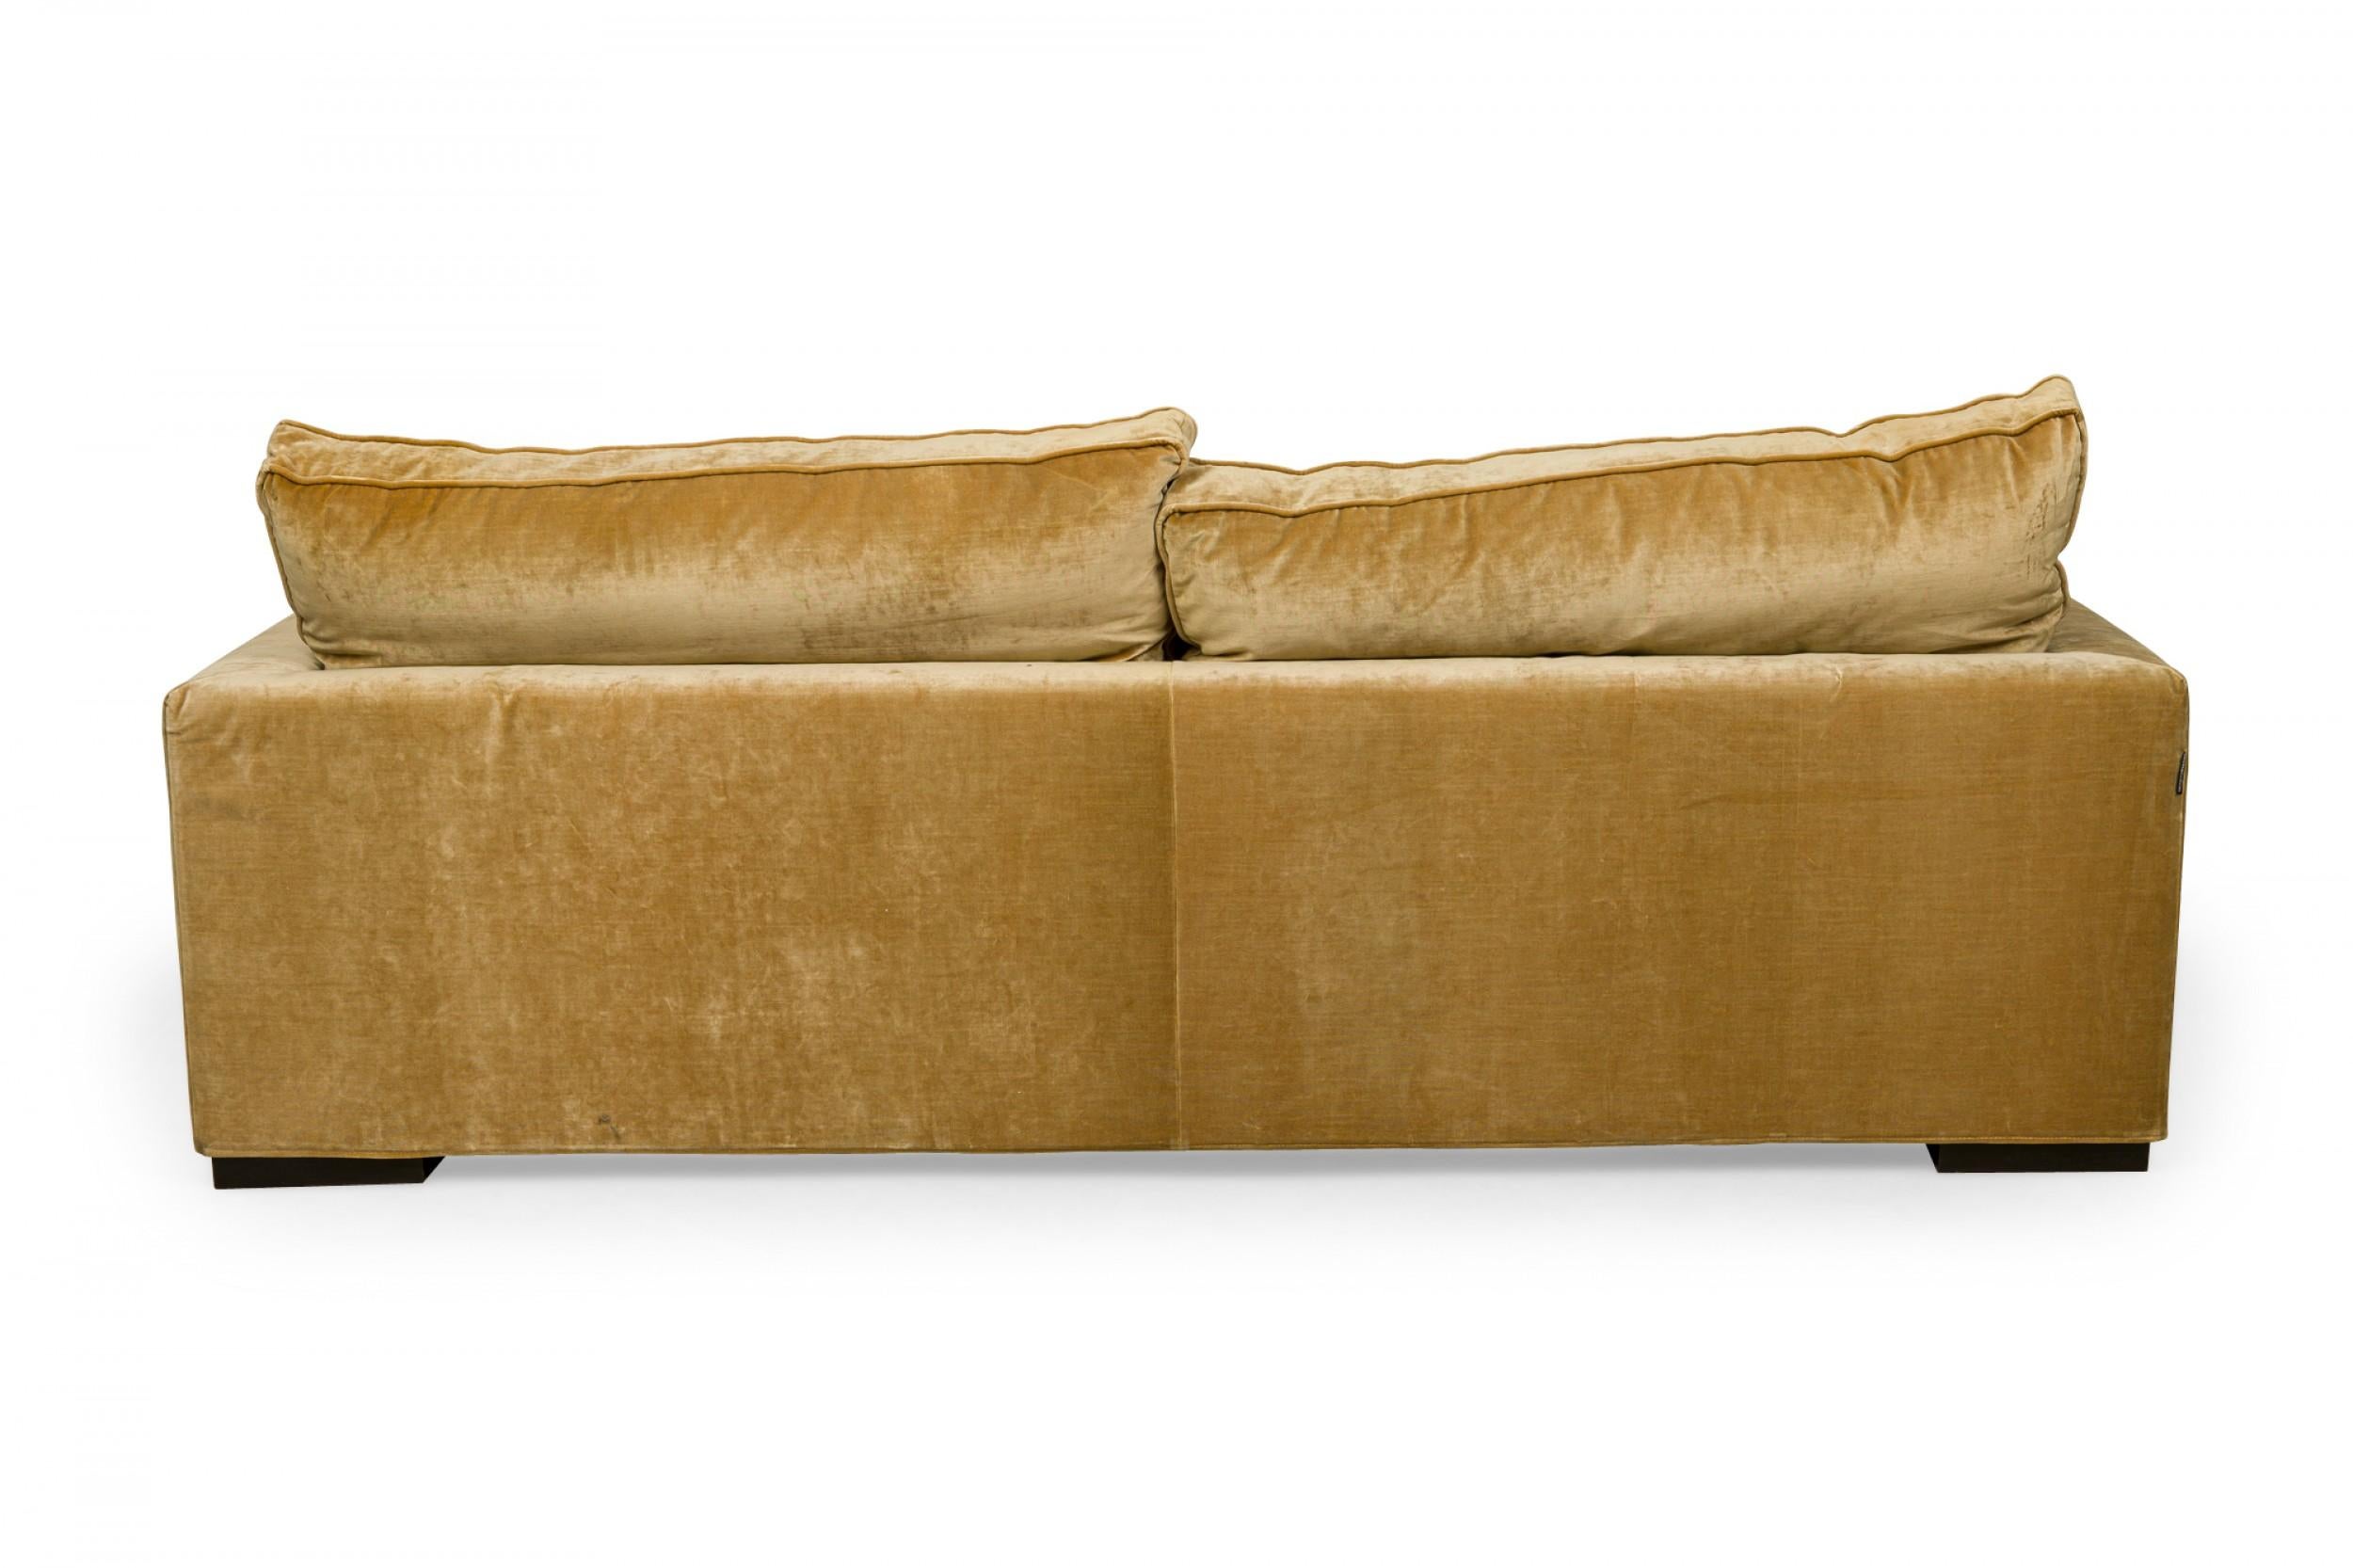 20th Century Roche Bobois Vintage Light Gold Crushed Velvet Upholstered Sofa